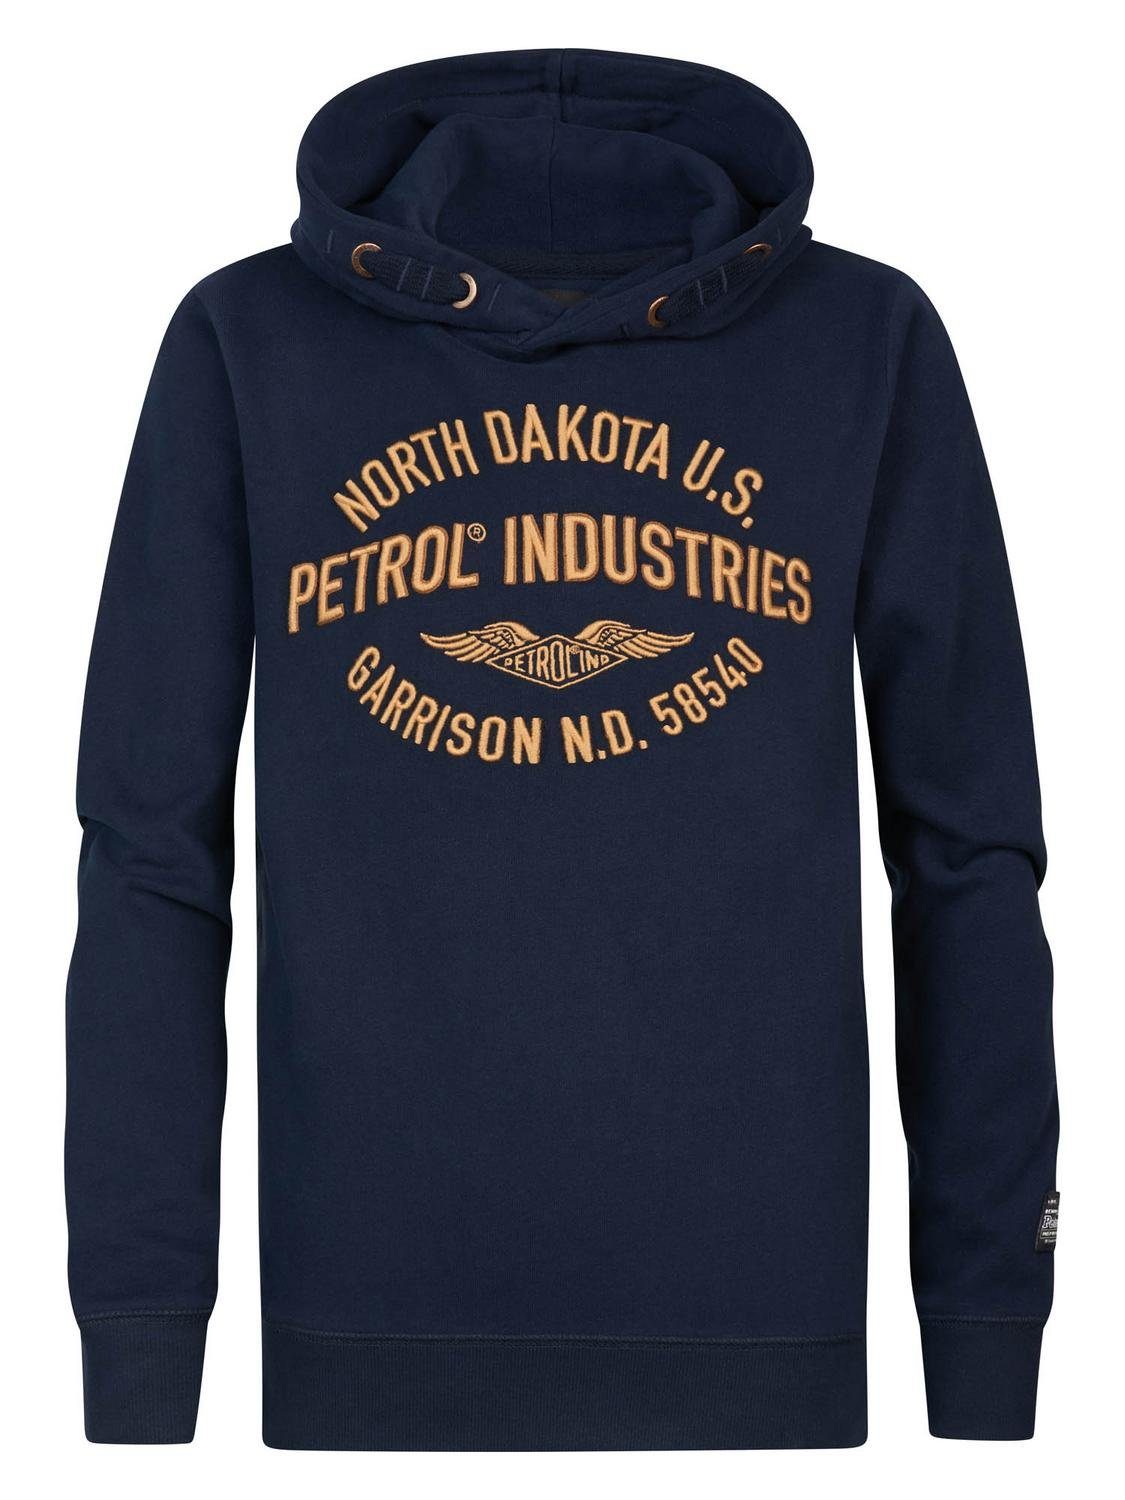 Petrol Industries Sweatshirt Boys Sweater Hooded